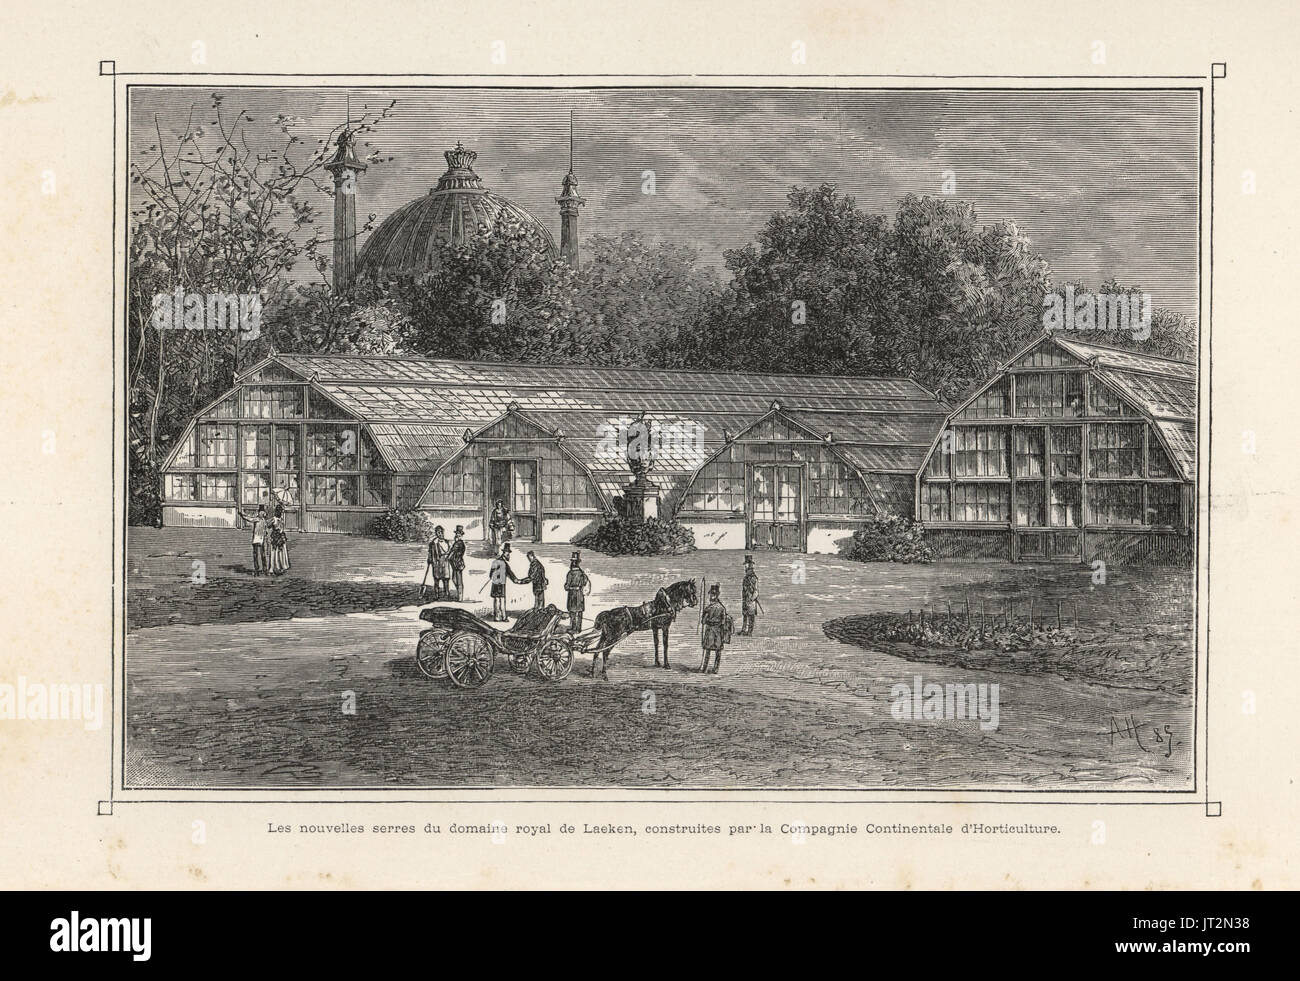 Le nuove serre in giardini reali a Laken, Bruxelles, costruito dalla Compagnie Continentale d'orticoltura. Xilografia da A.H. da Jean Linden's'Illustration horticole, Bruxelles, 1885. Foto Stock